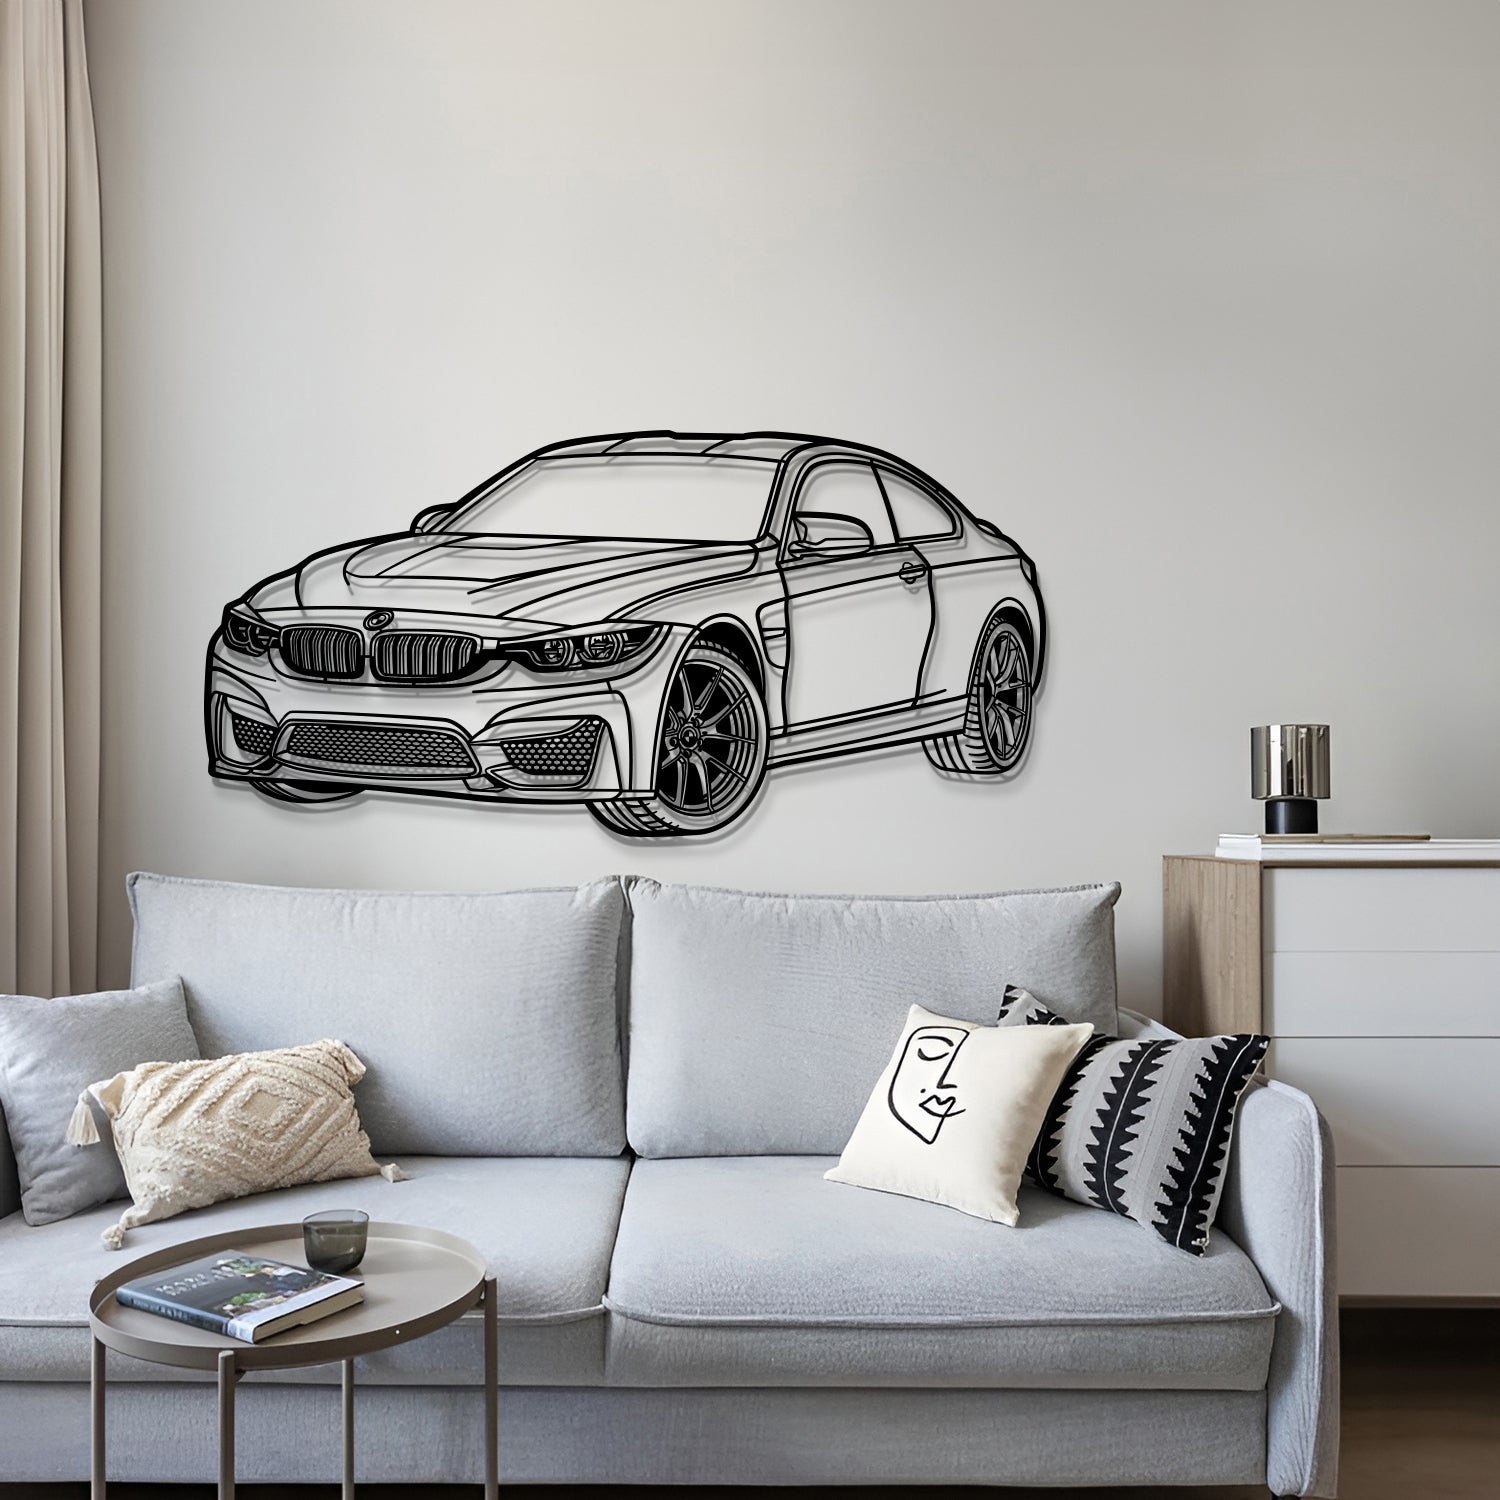 2014 F82 M4 Perspective Metal Car Wall Art - MT1143